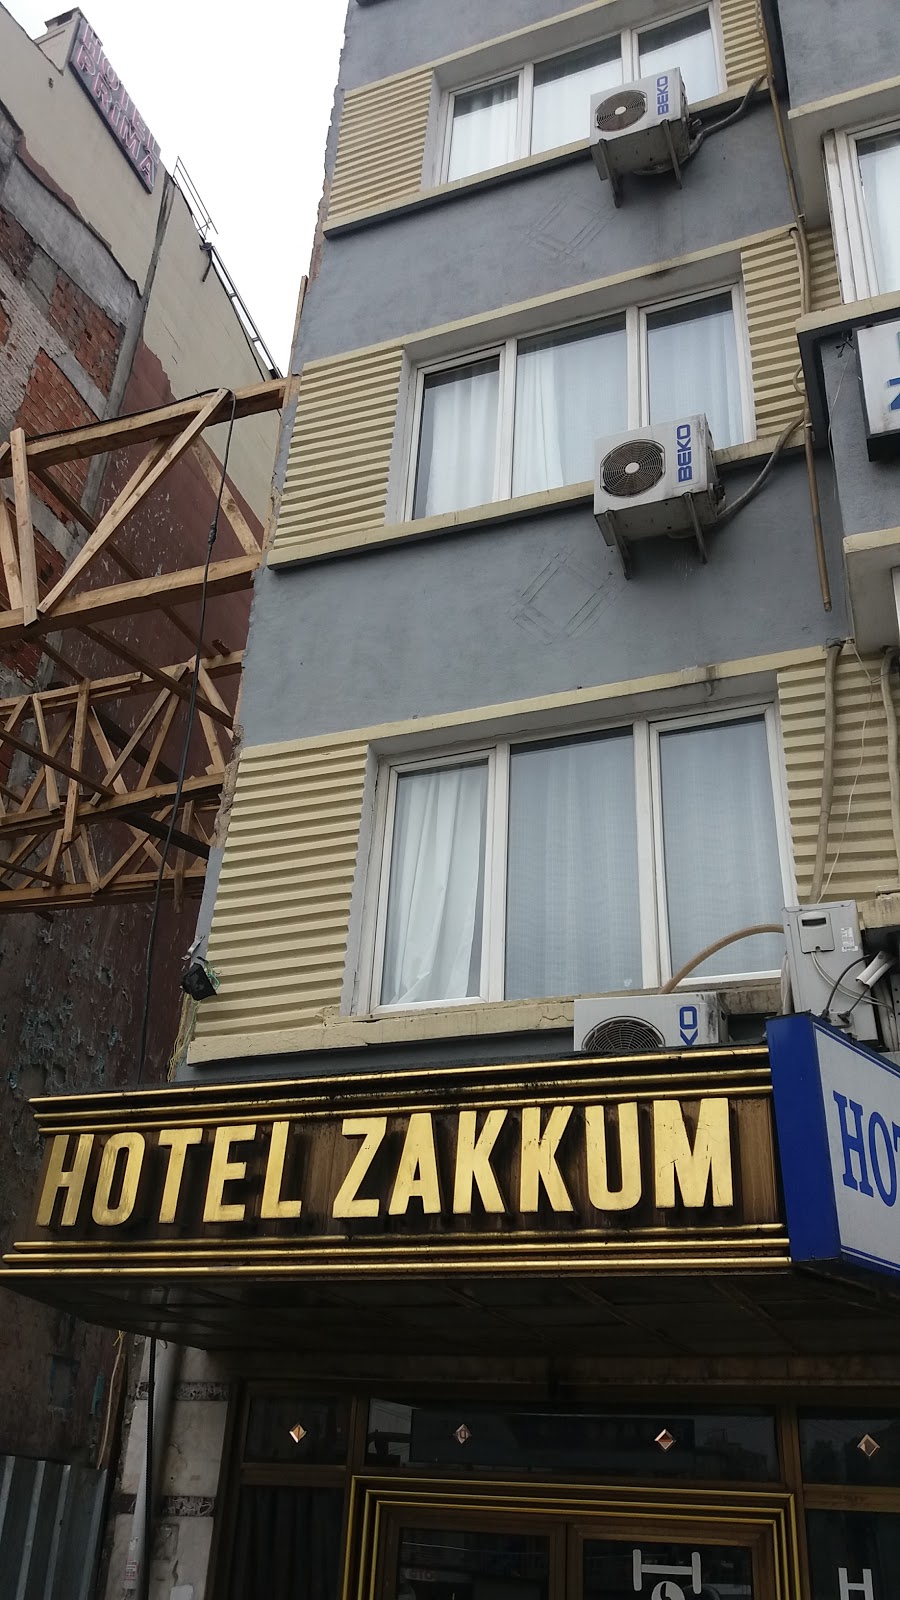 Hotel Zakkum